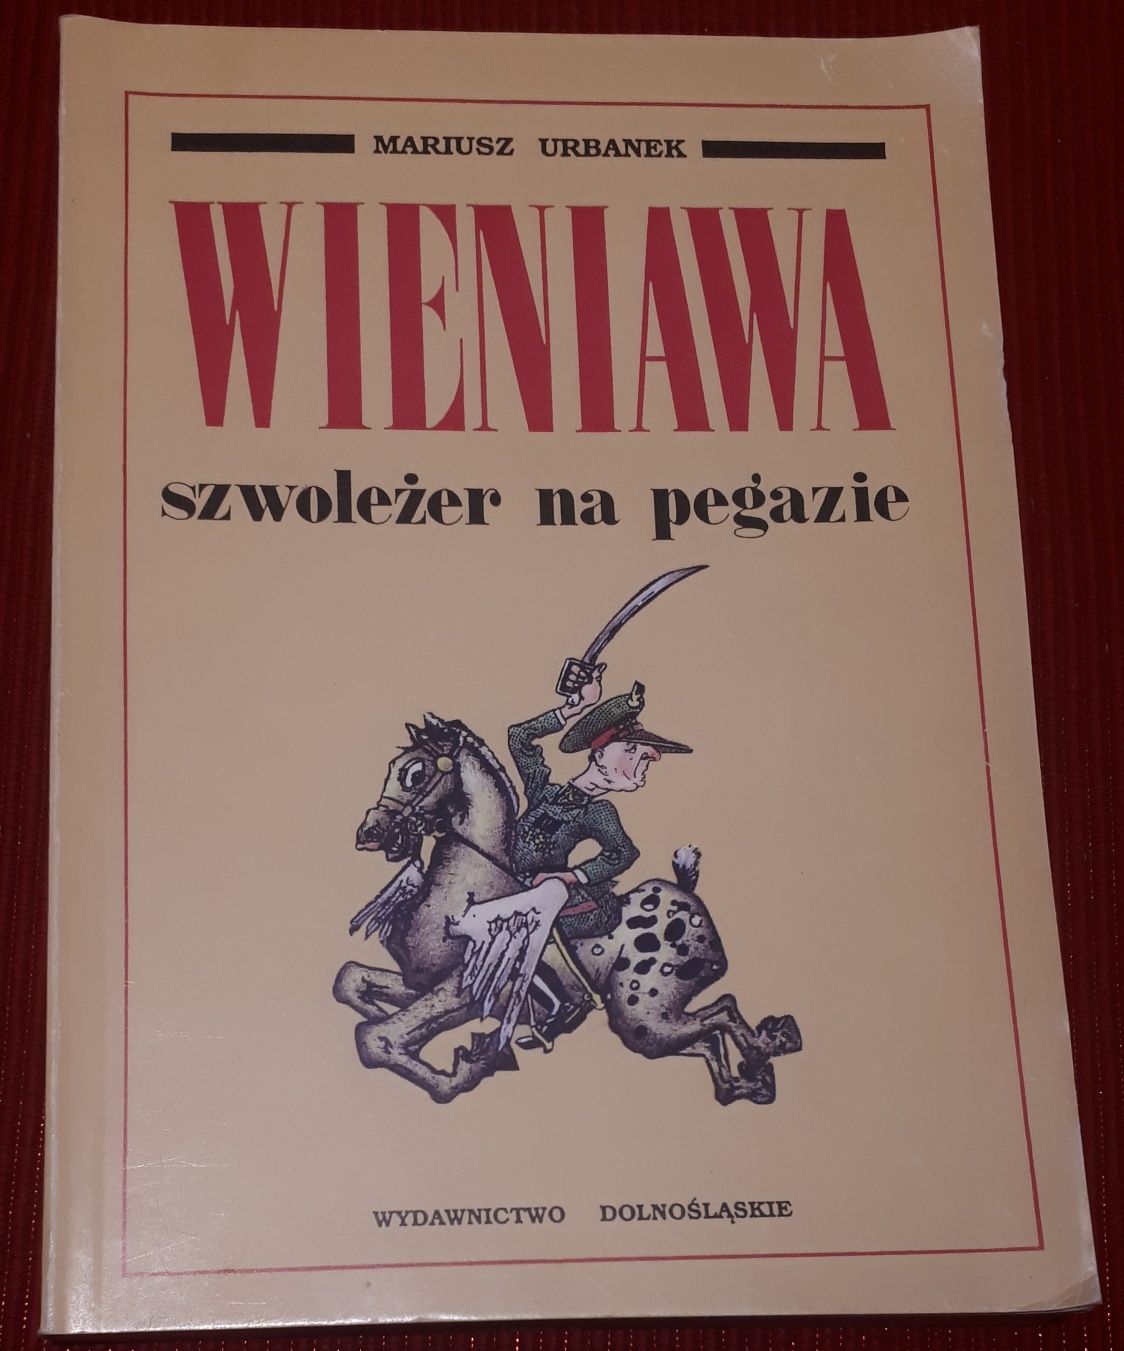 Wieniawa szwoleżer na pegazie Mariusz Urbanek 1991